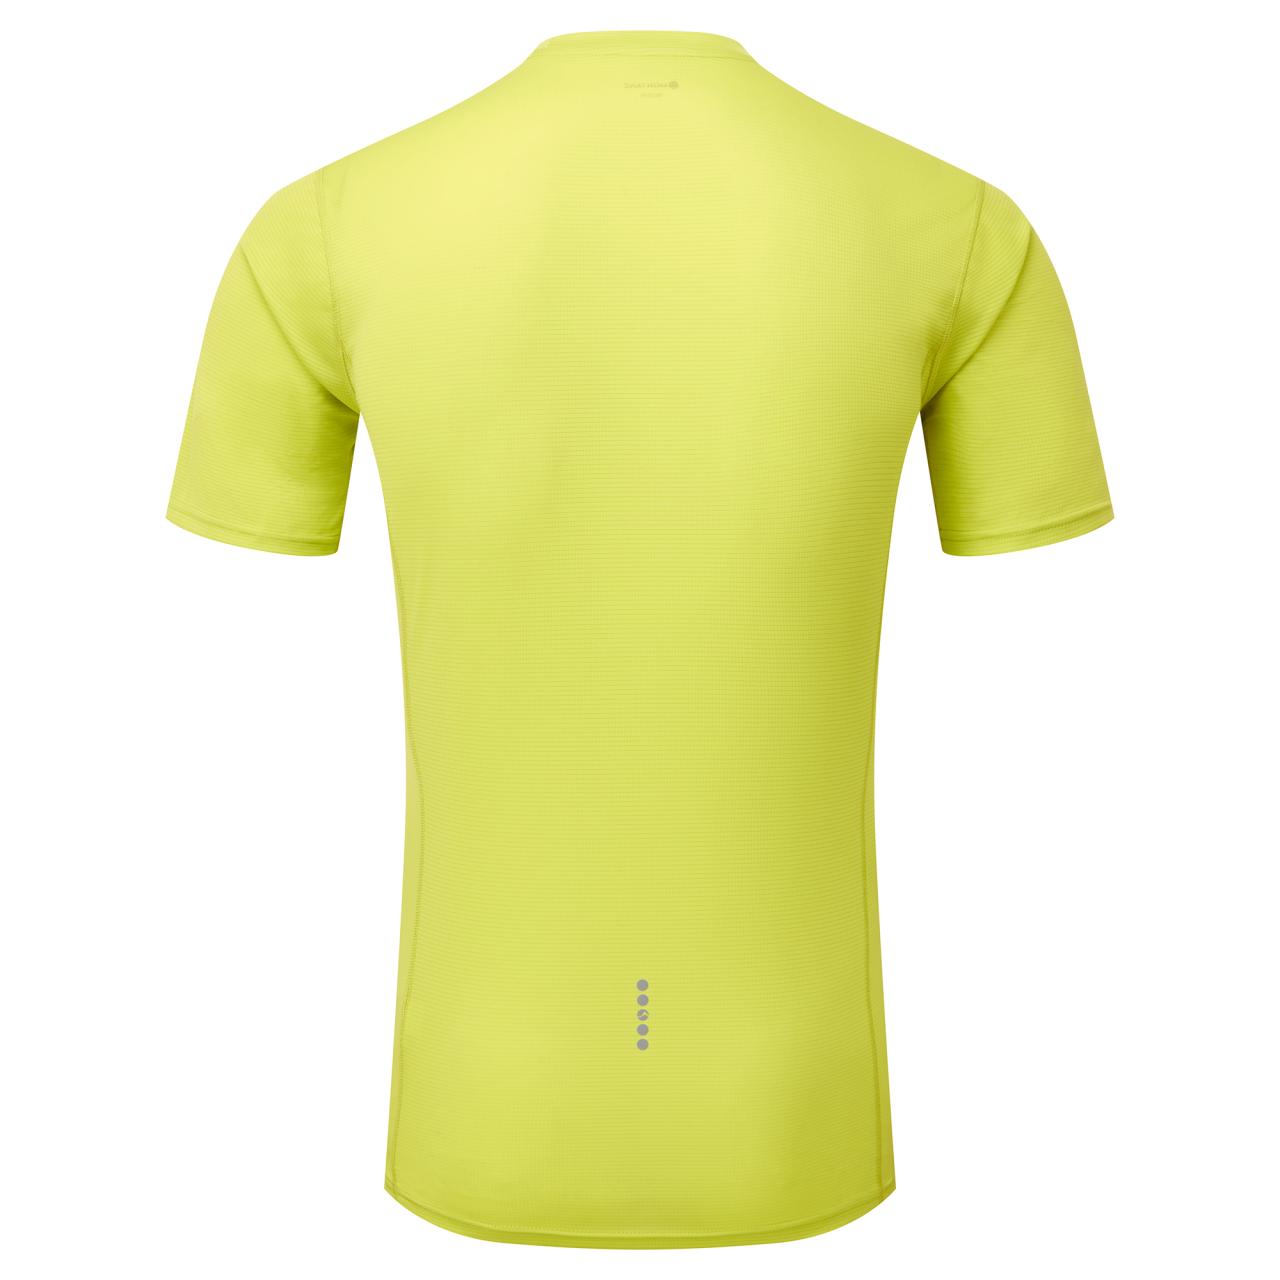 DART NANO T-SHIRT-CITRUS SPRING-M pánské triko žlutozelené